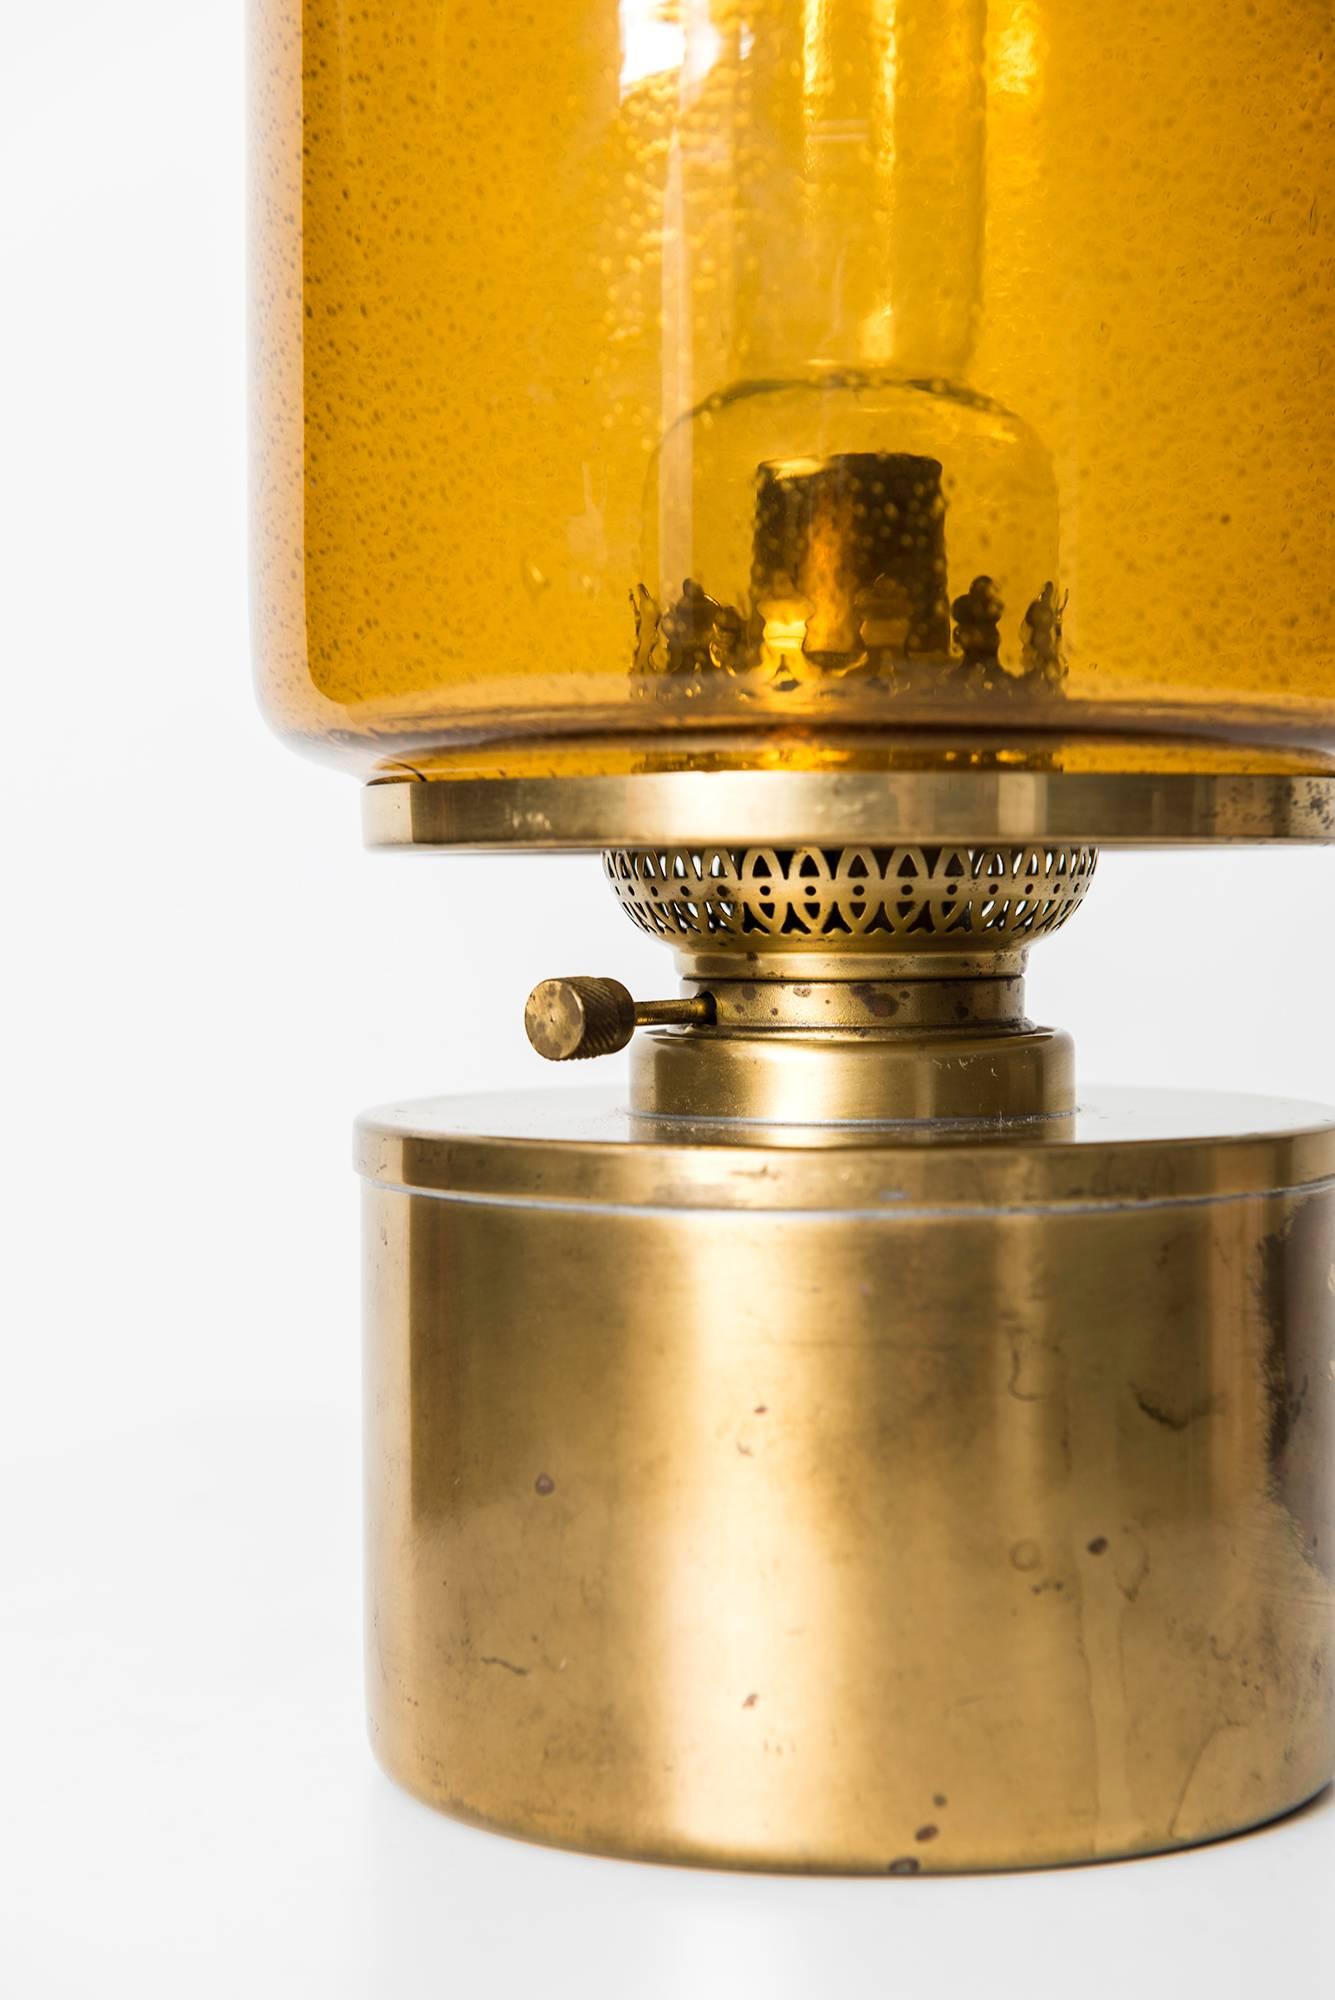 Rare kerosene, oil lamp model L-47 designed by Hans-Agne Jakobsson. Produced by Hans-Agne Jakobsson in Markaryd, Sweden.